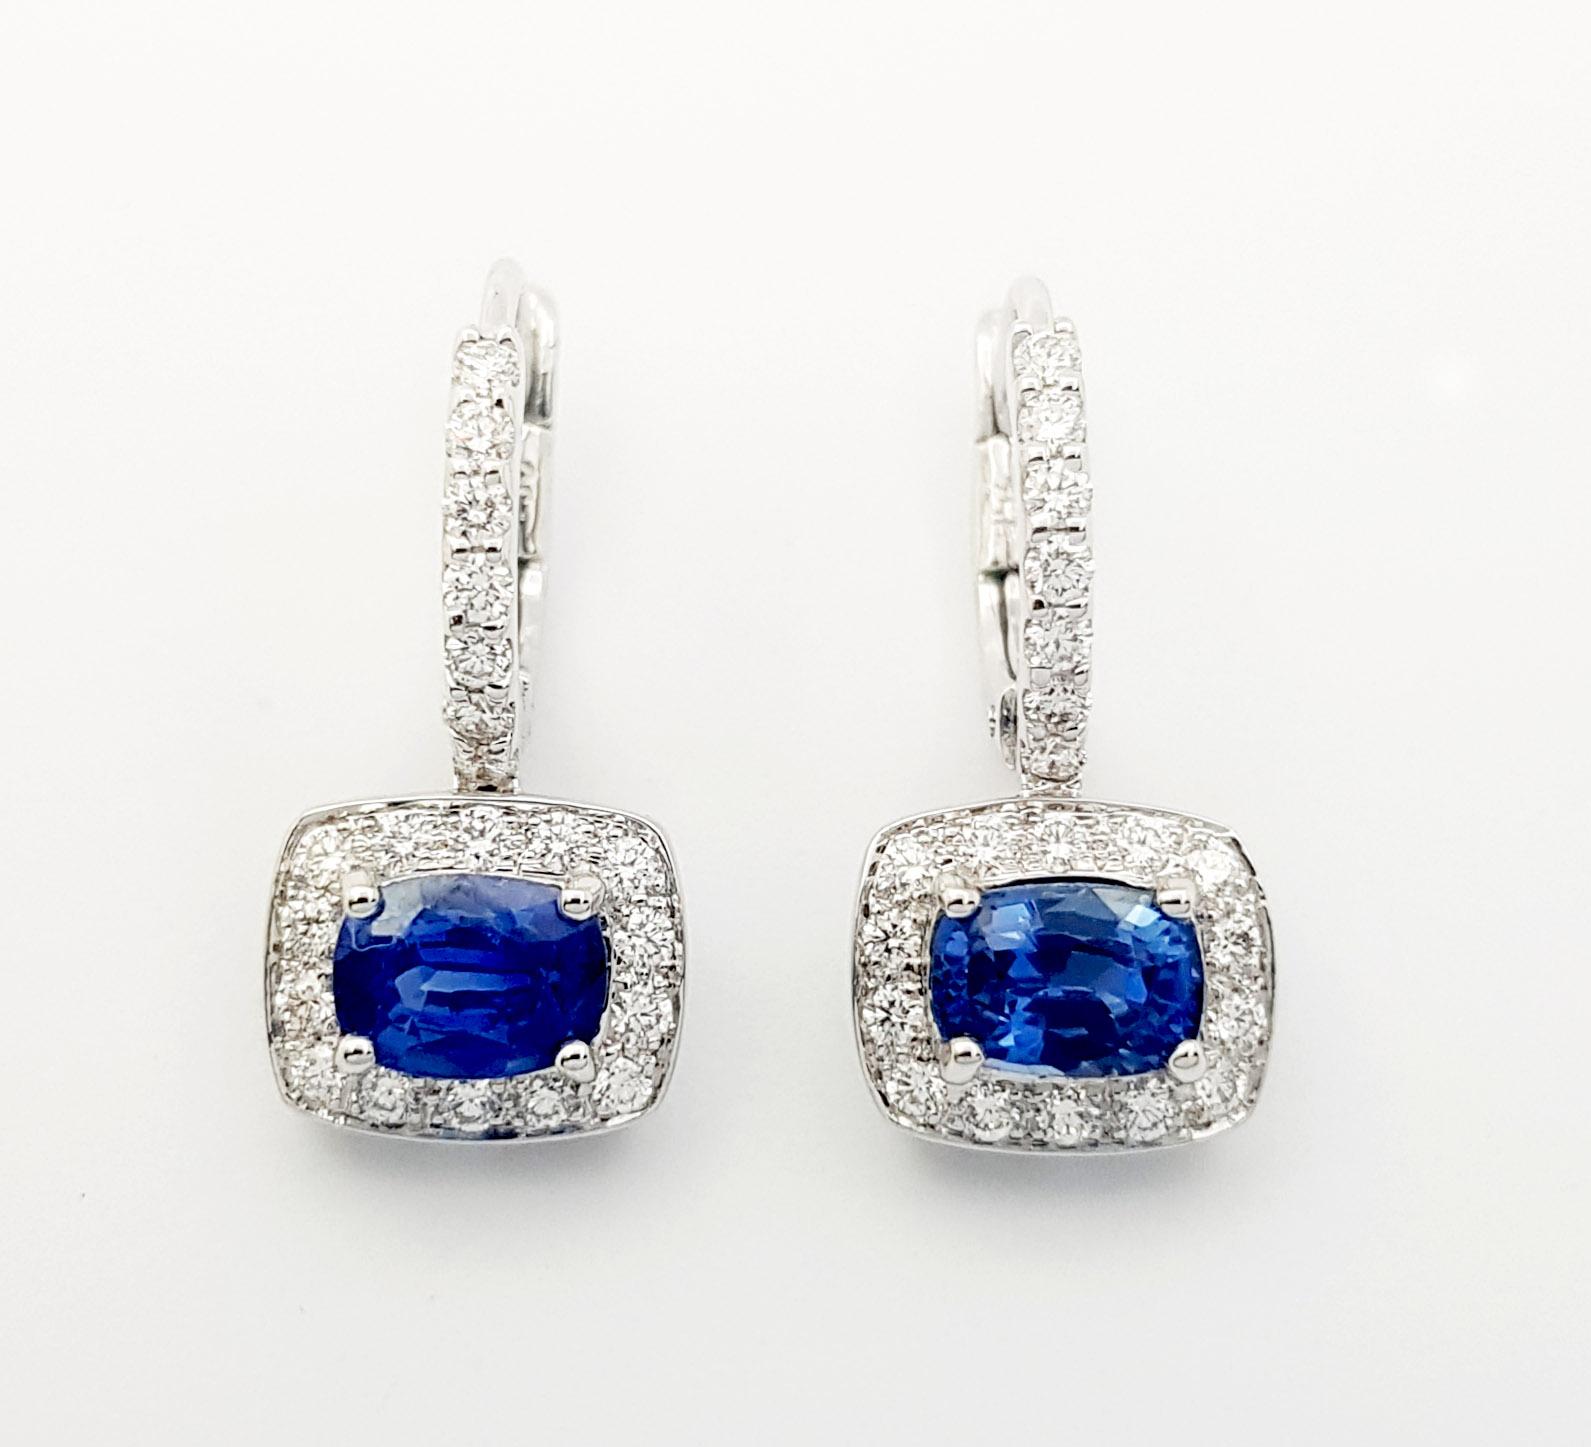 Blauer Saphir 1,88 Karat mit Diamant 0,56 Karat Ohrringe in 18K Weißgoldfassung

Breite: 0,9 cm 
Länge: 1.9 cm
Gesamtgewicht: 4,76 Gramm

